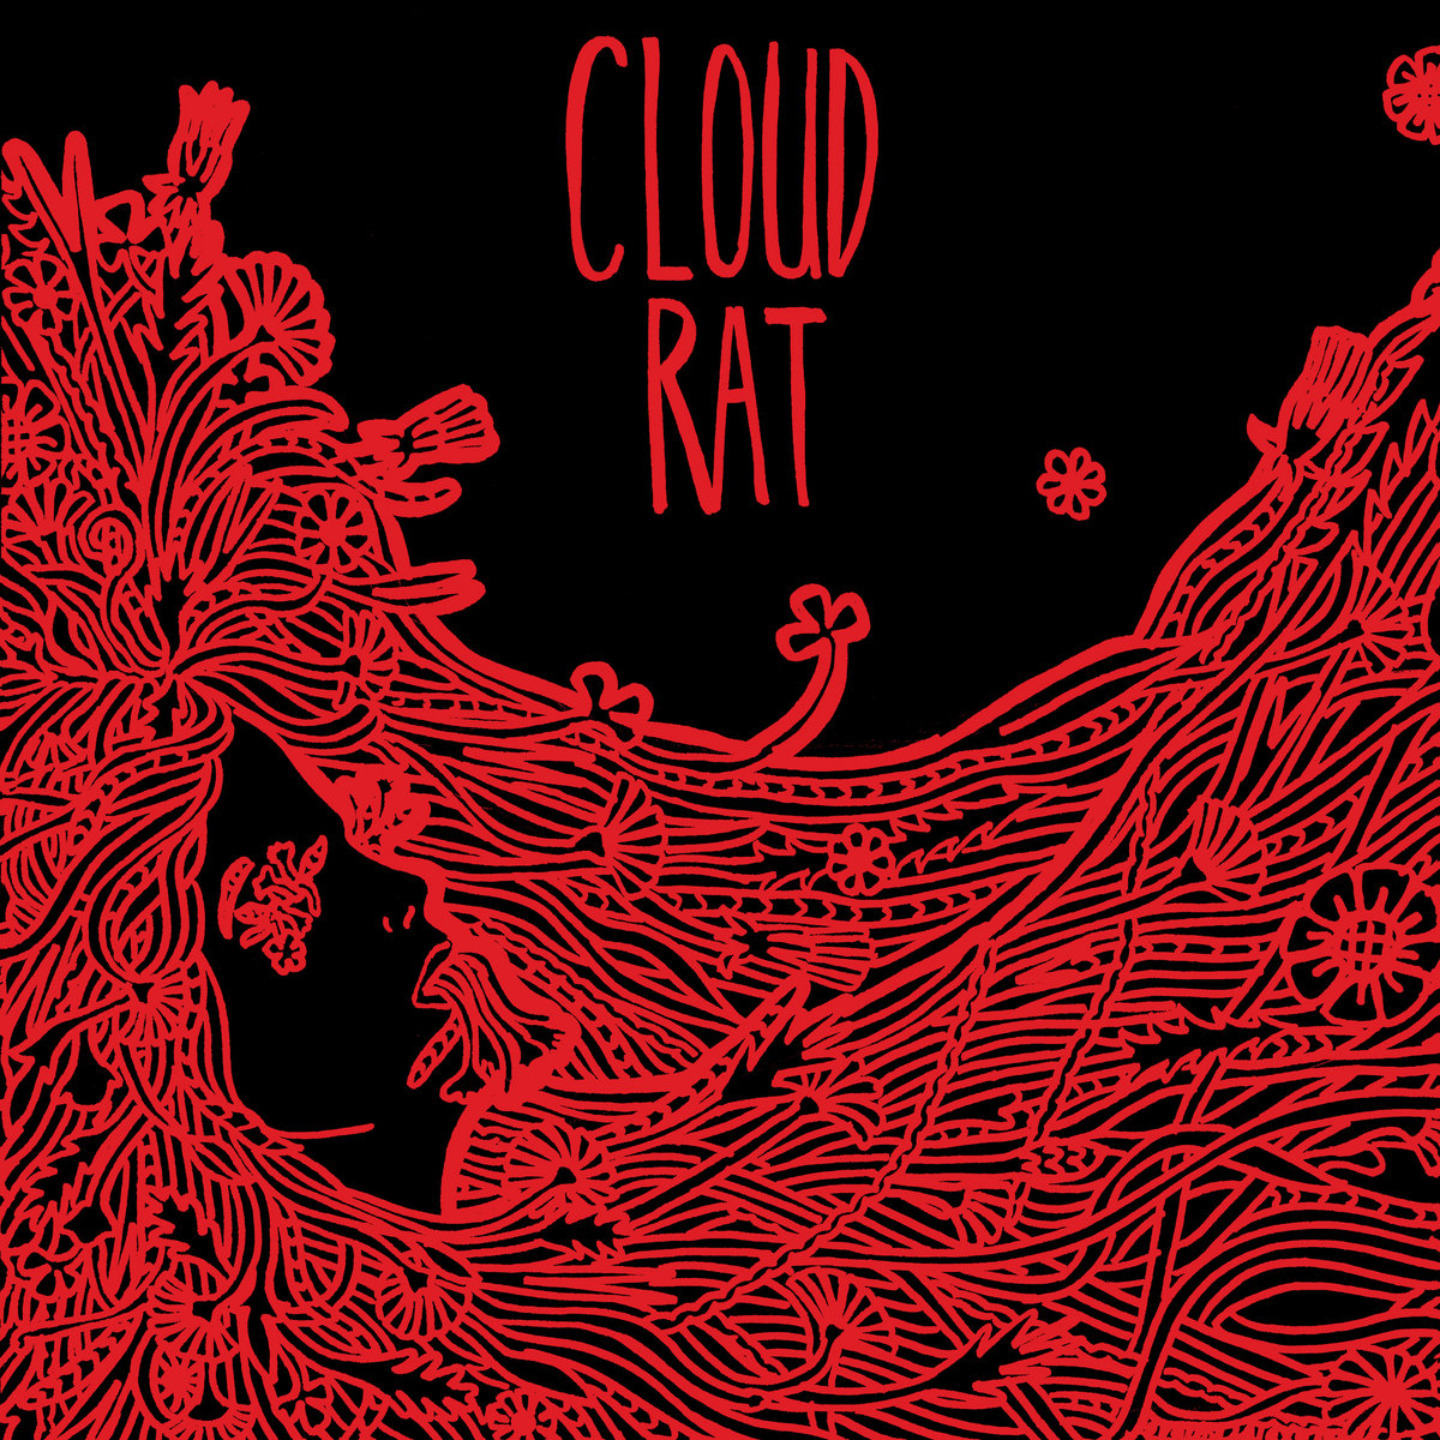 CLOUD RAT - Cloud Rat Redux LP